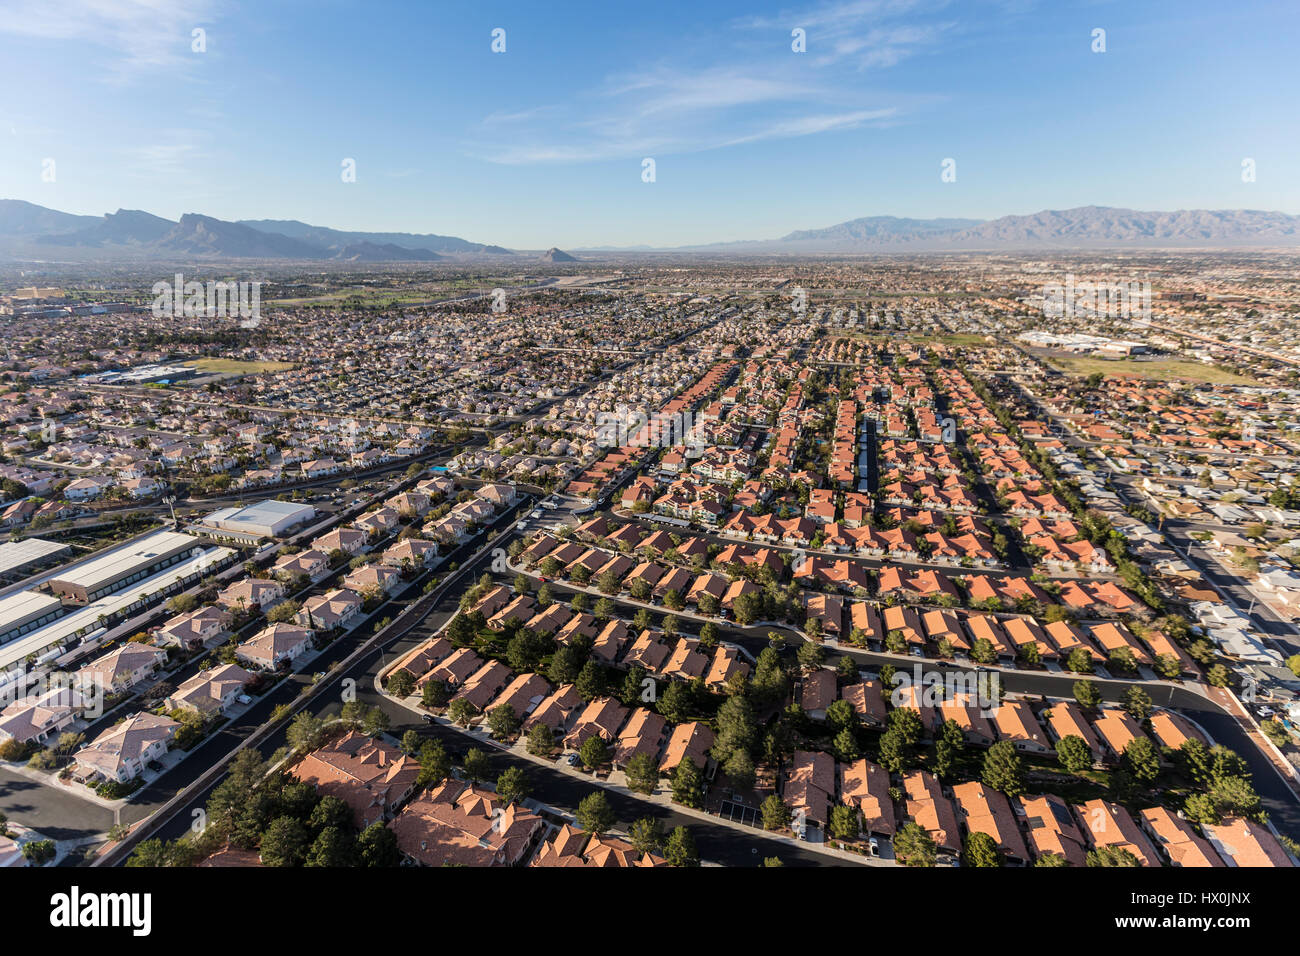 Aerial view of suburban neighborhood sprawl in Las Vegas, Nevada. Stock Photo